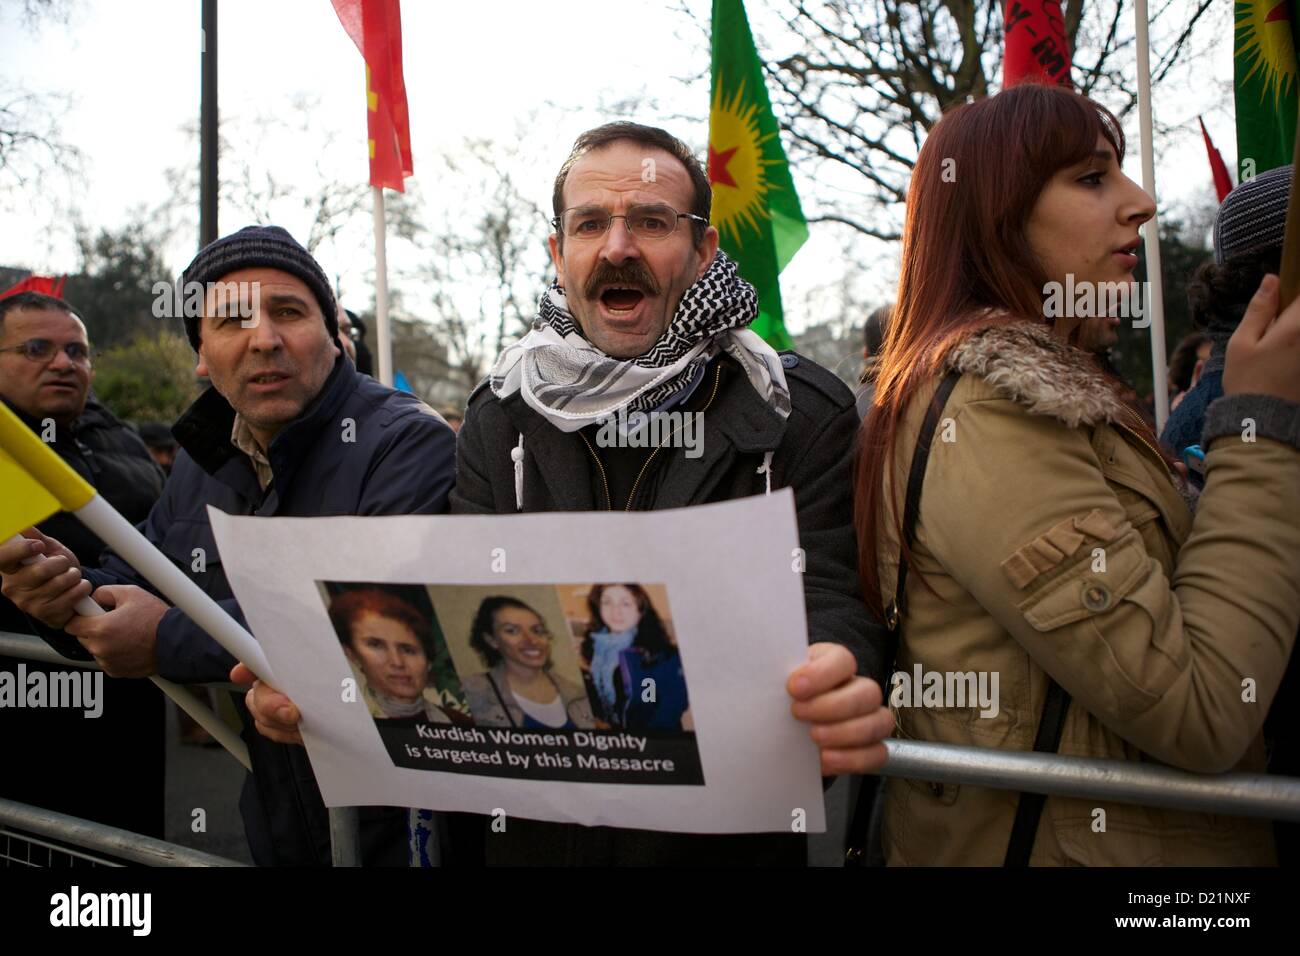 London, UK. 11. Januar 2013. Mitglieder des Londoner kurdische Gemeinschaft halten einen Protest außerhalb der türkischen Botschaft in London über die Ermordung von drei türkischen Aktivisten diese Woche in Paris. Behörden in Frankreich haben die Morde als ein "Attentat" bezeichnet. George Henton / Alamy Live News. Stockfoto